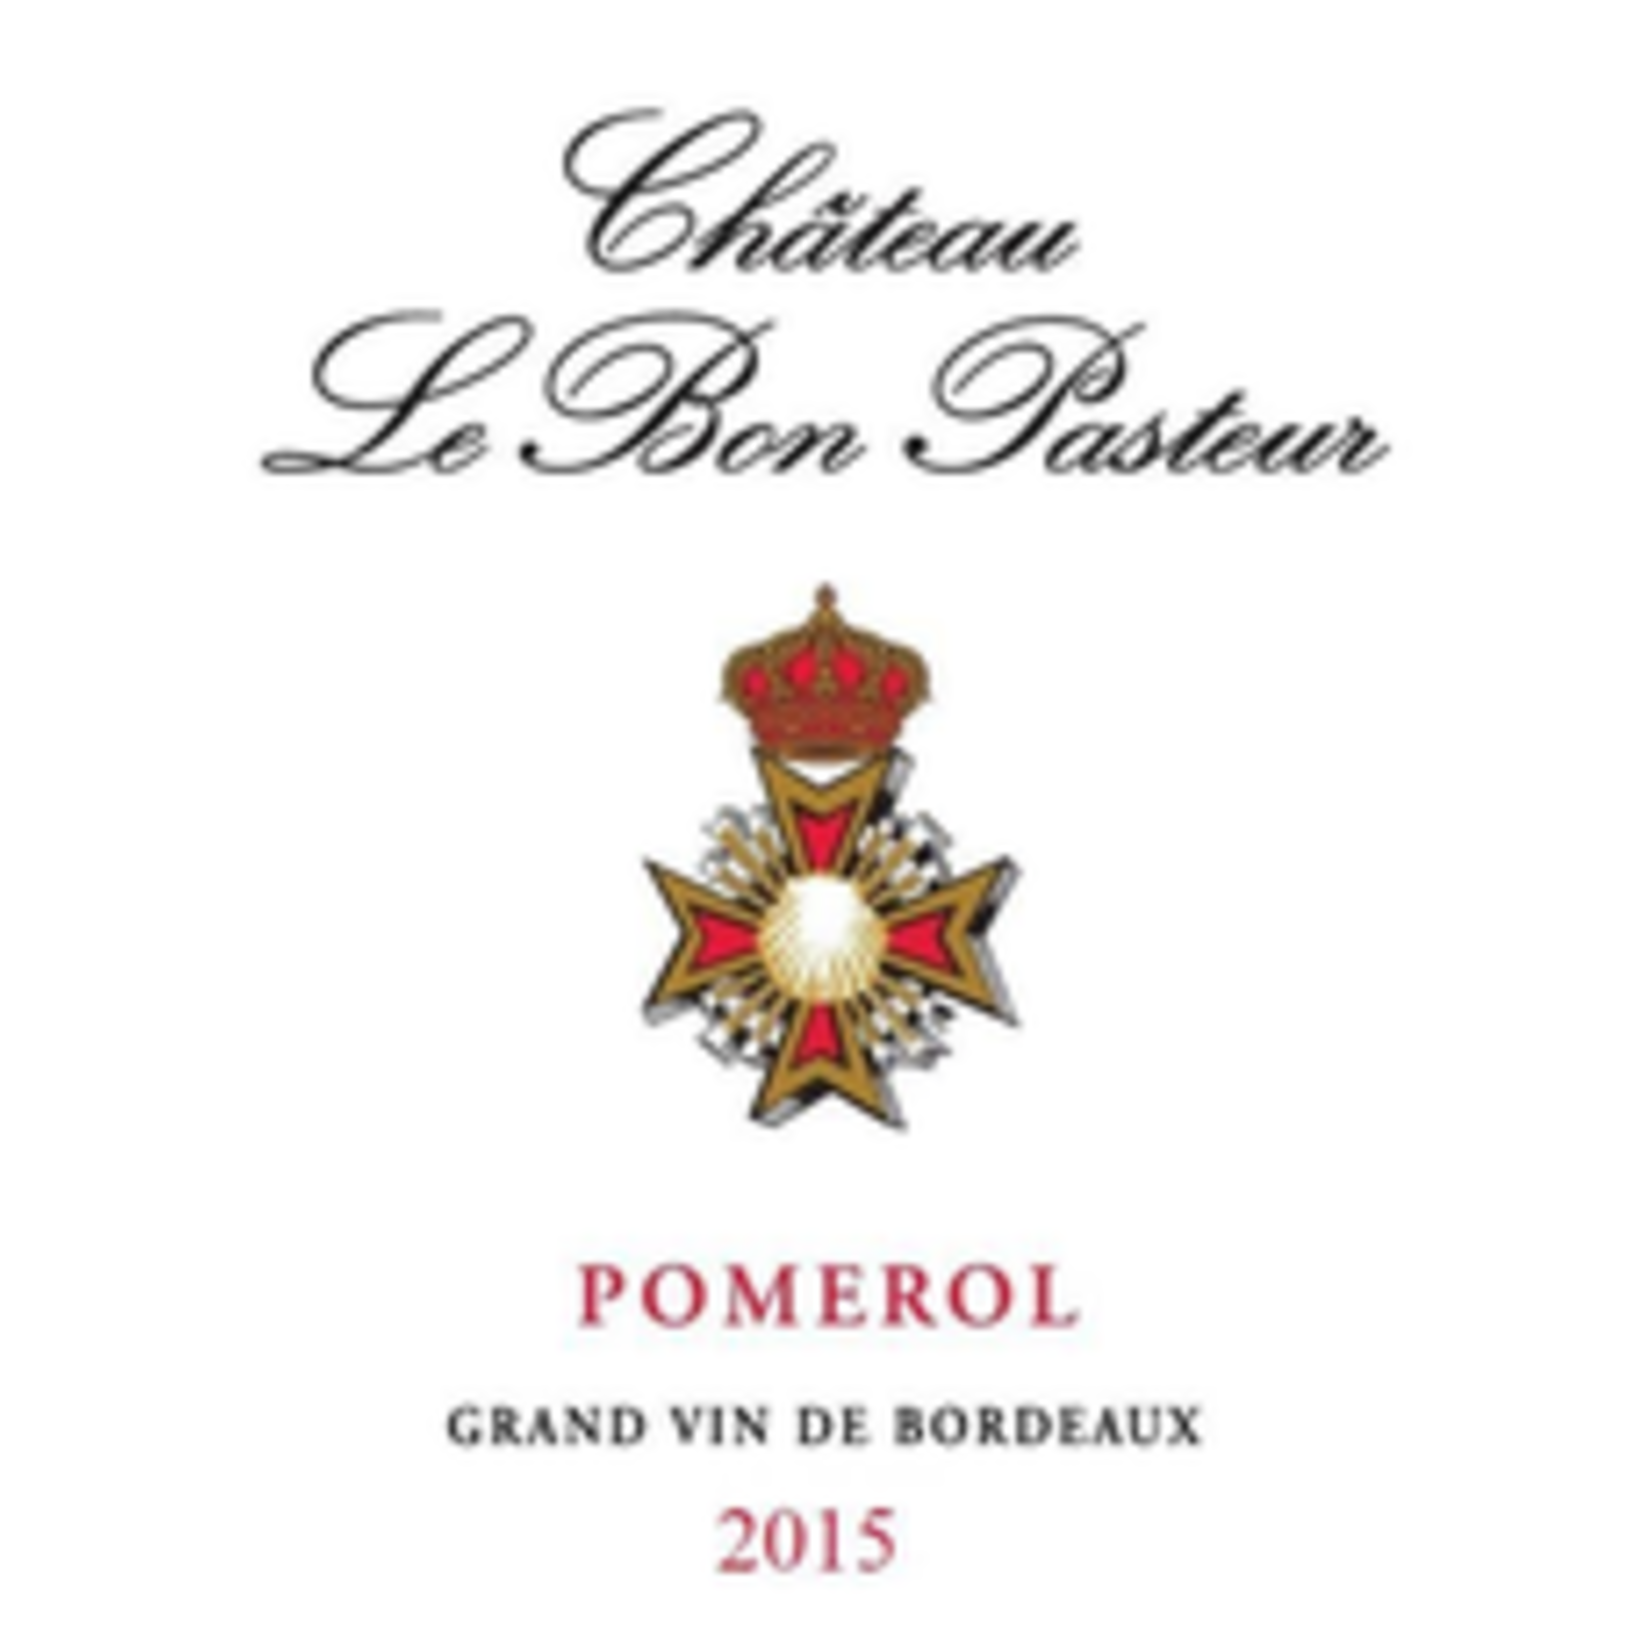 Wine Chateau Le Bon Pasteur 2015